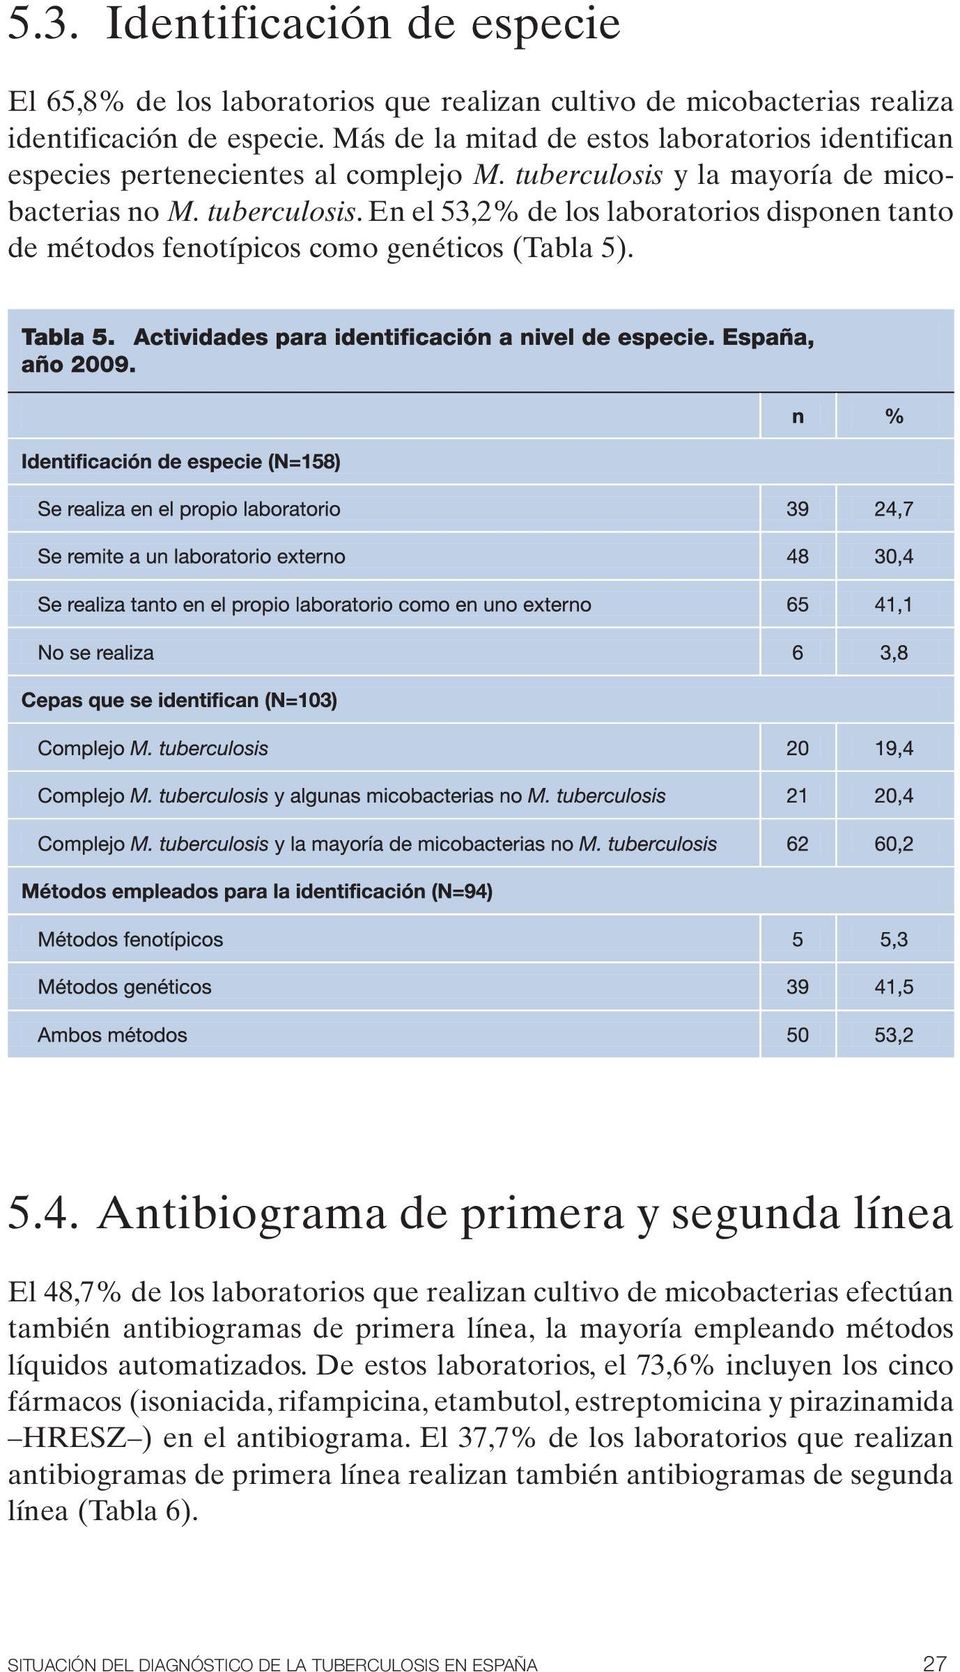 5.4. Antibiograma de primera y segunda línea El 48,7% de los laboratorios que realizan cultivo de micobacterias efectúan también antibiogramas de primera línea, la mayoría empleando métodos líquidos